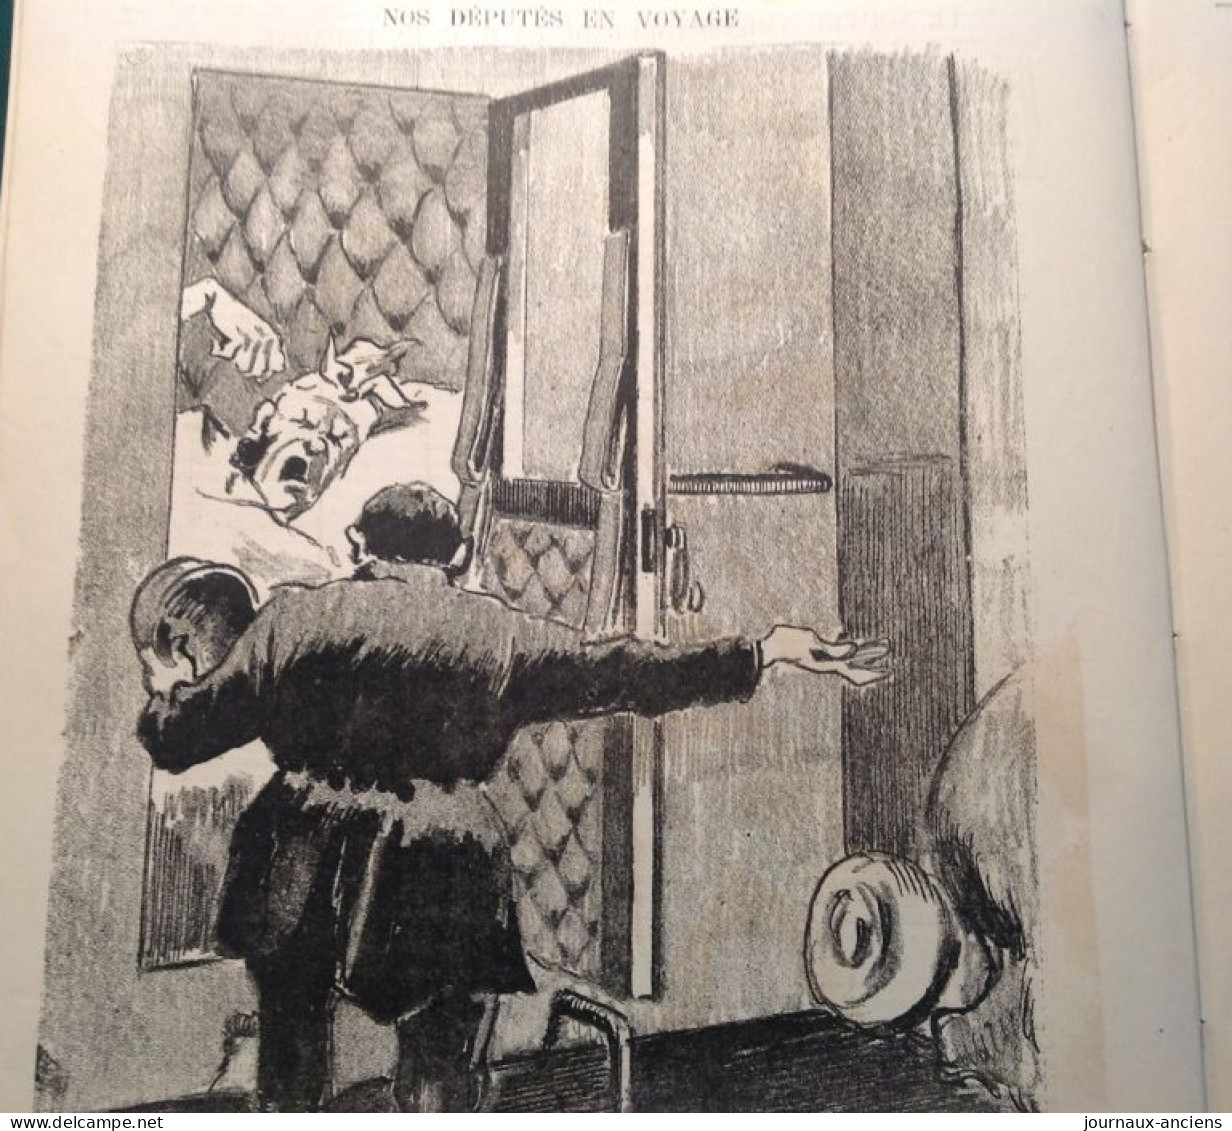 1882  LE MONDE PARISIEN - OURS SAINT PETERBOURG - LOI SUR L'ENSEIGNEMENT PRIMAIRE - DÉPUTÉS EN VOYAGE - Mr ANDRIEUX - Zeitschriften - Vor 1900